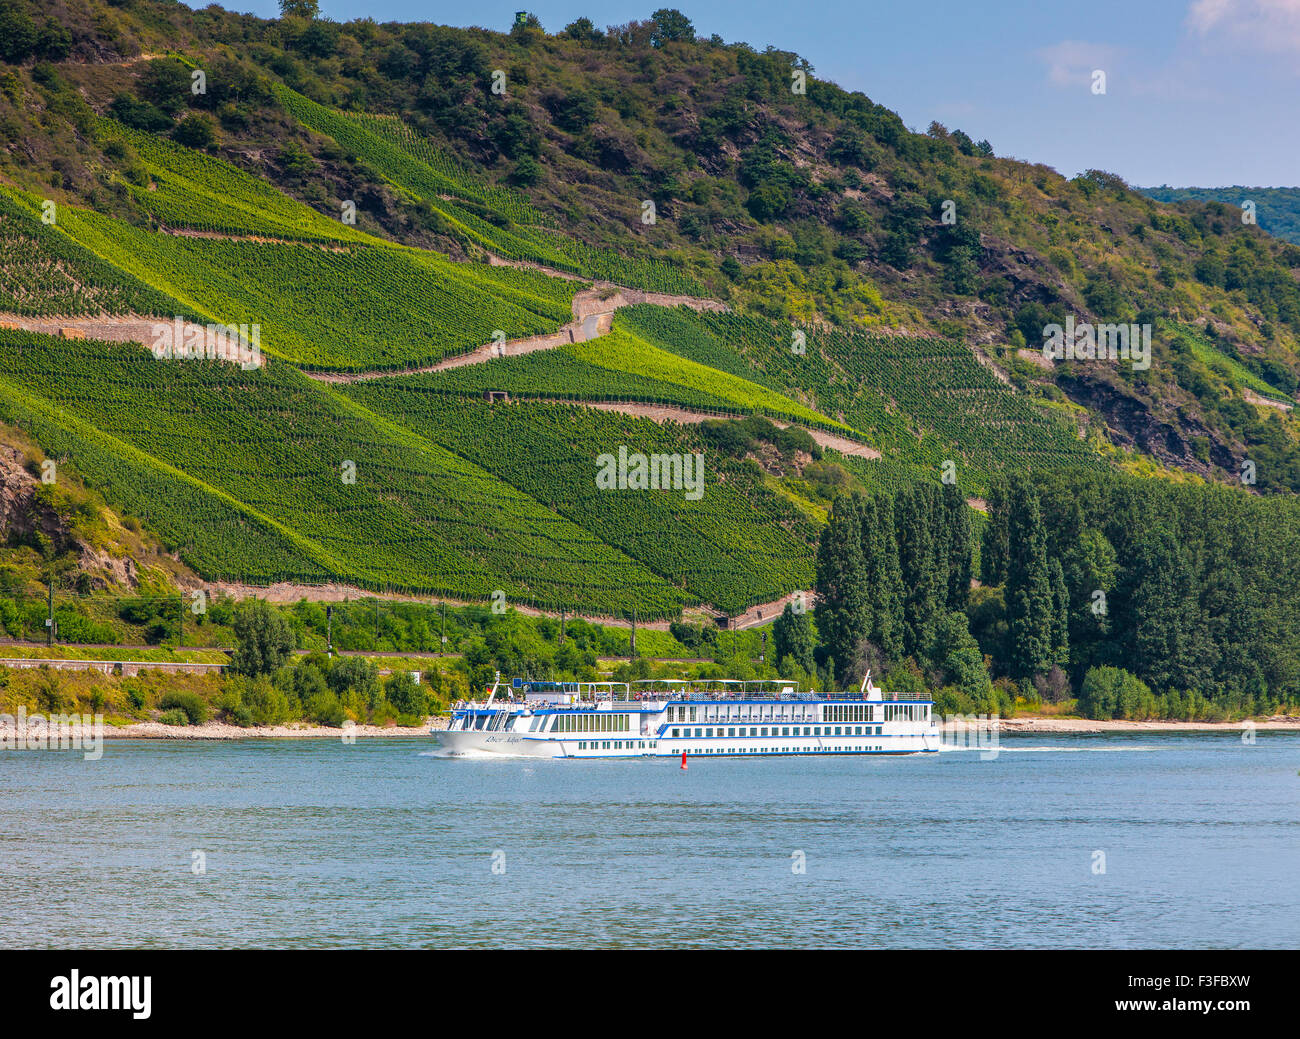 Cruise ship passing vineyards, Middle Rhine, Germany Stock Photo